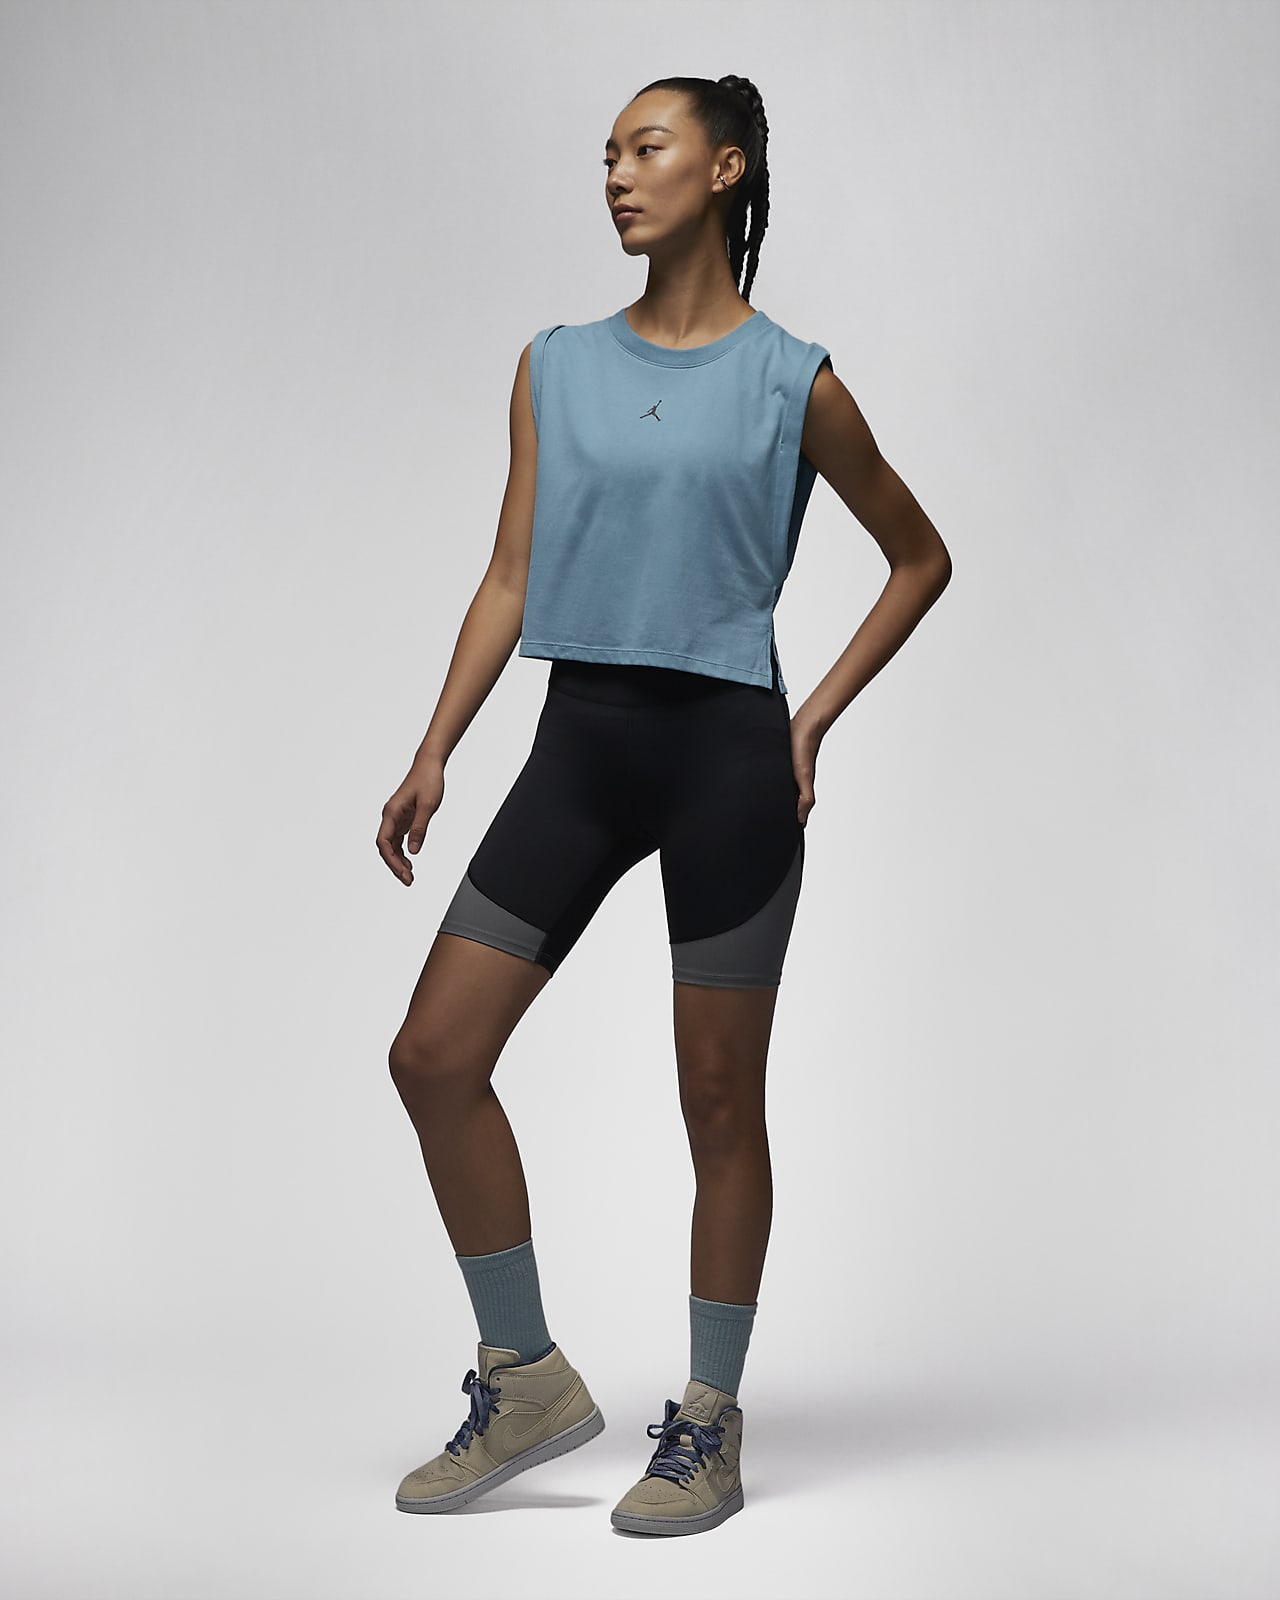 Women's Running Tank Tops & Sleeveless Shirts. Nike CA